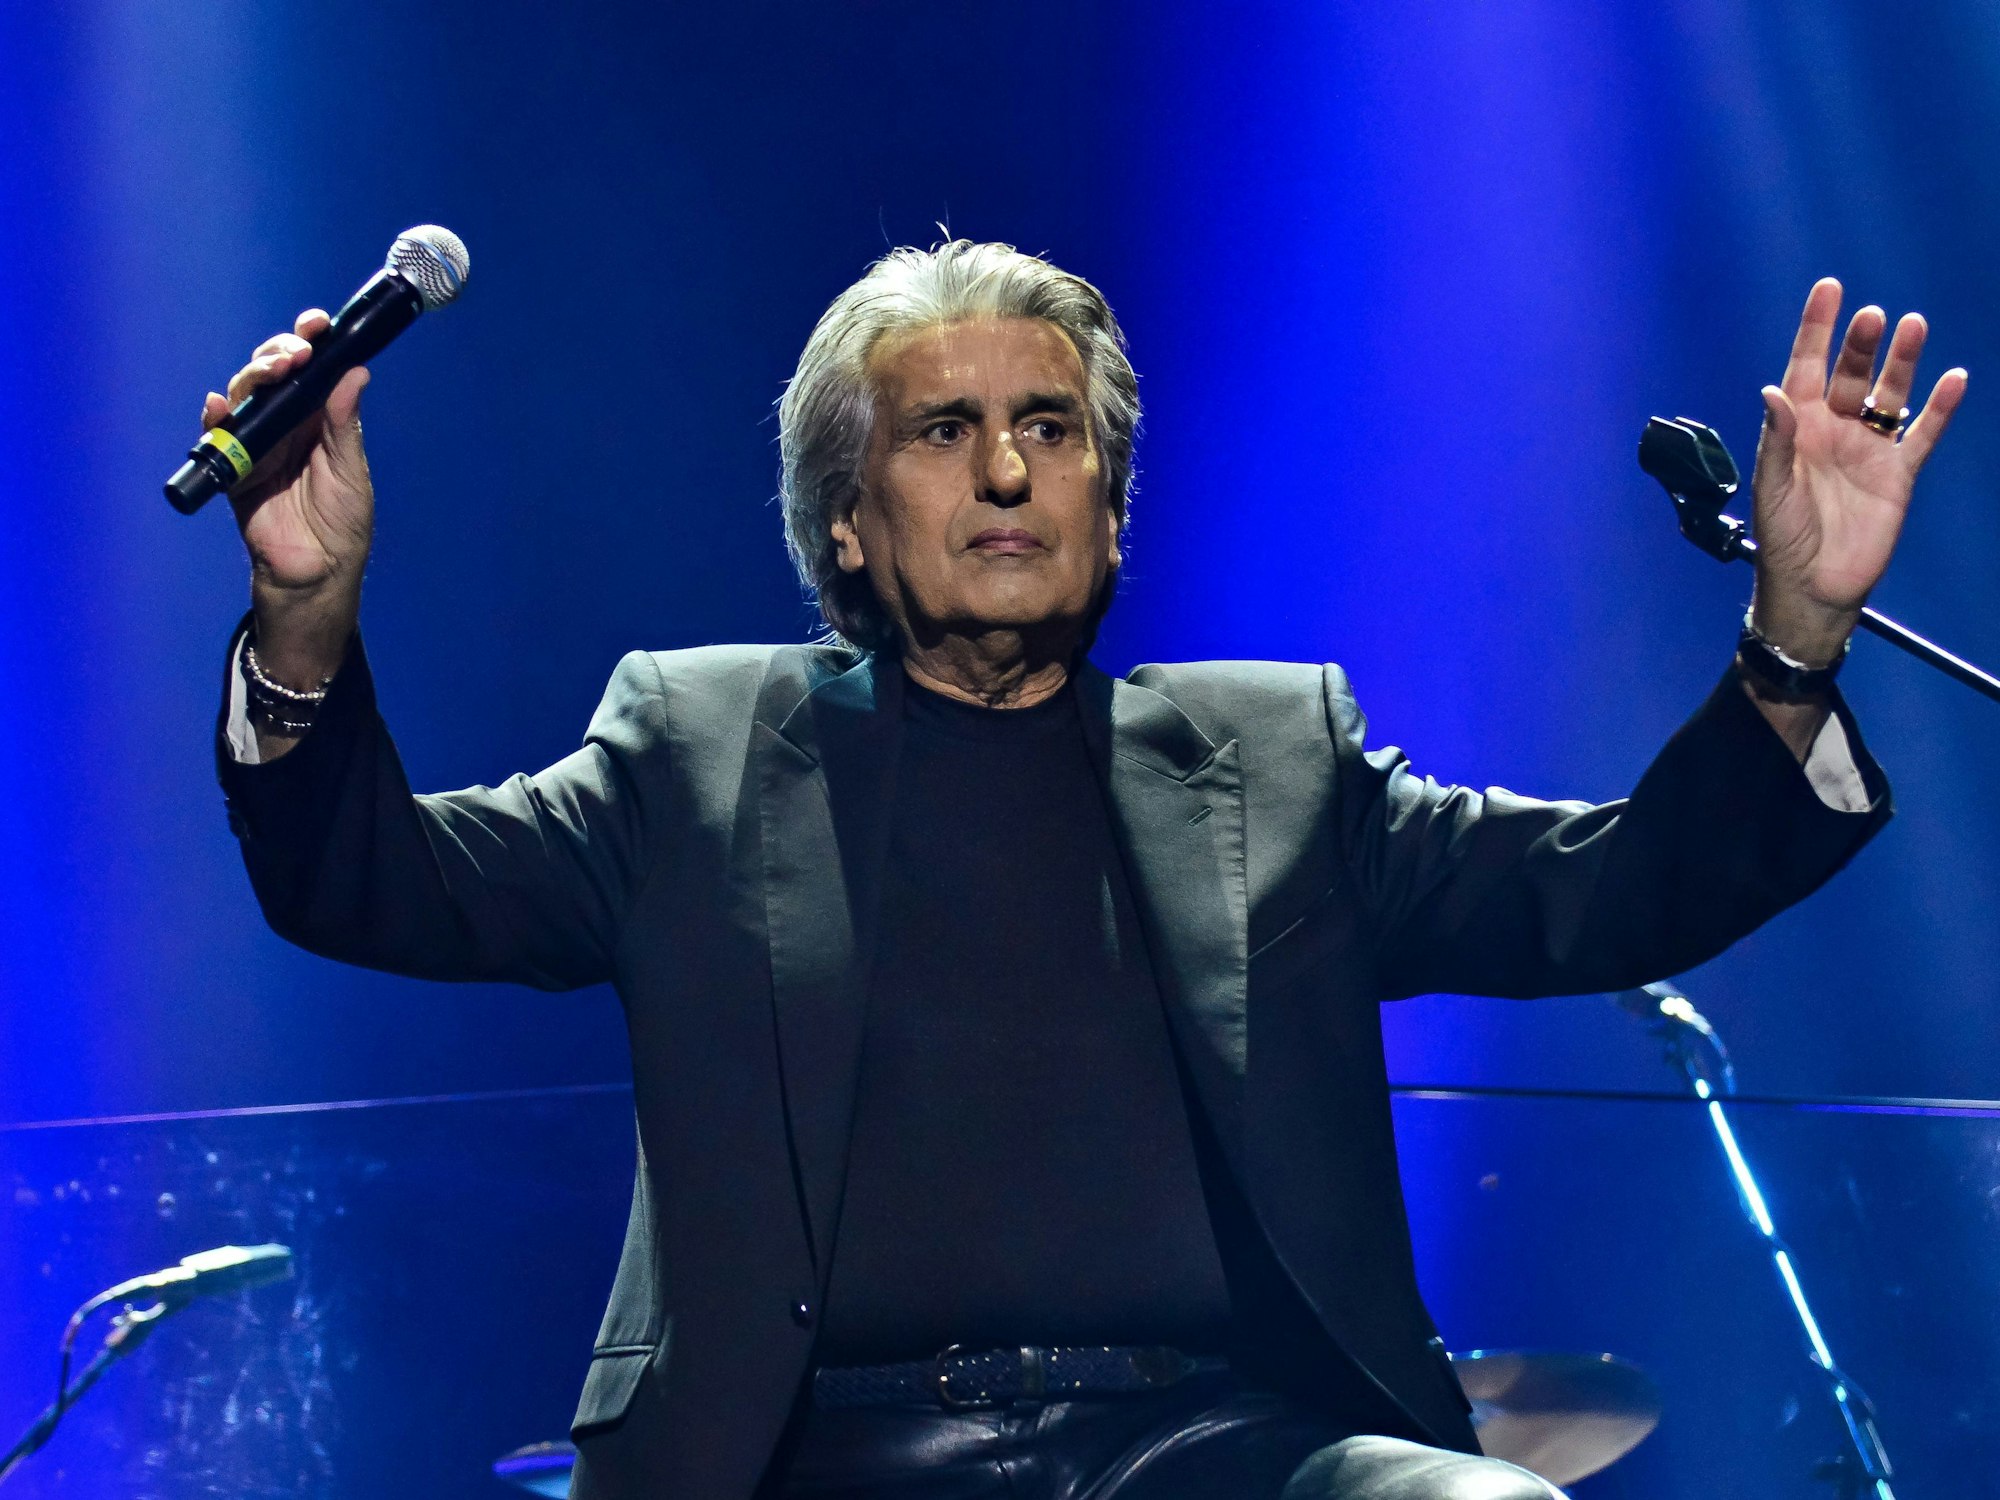 Toto Cutogno, italienischer Sänger, steht bei einem Konzert auf der Bühne.